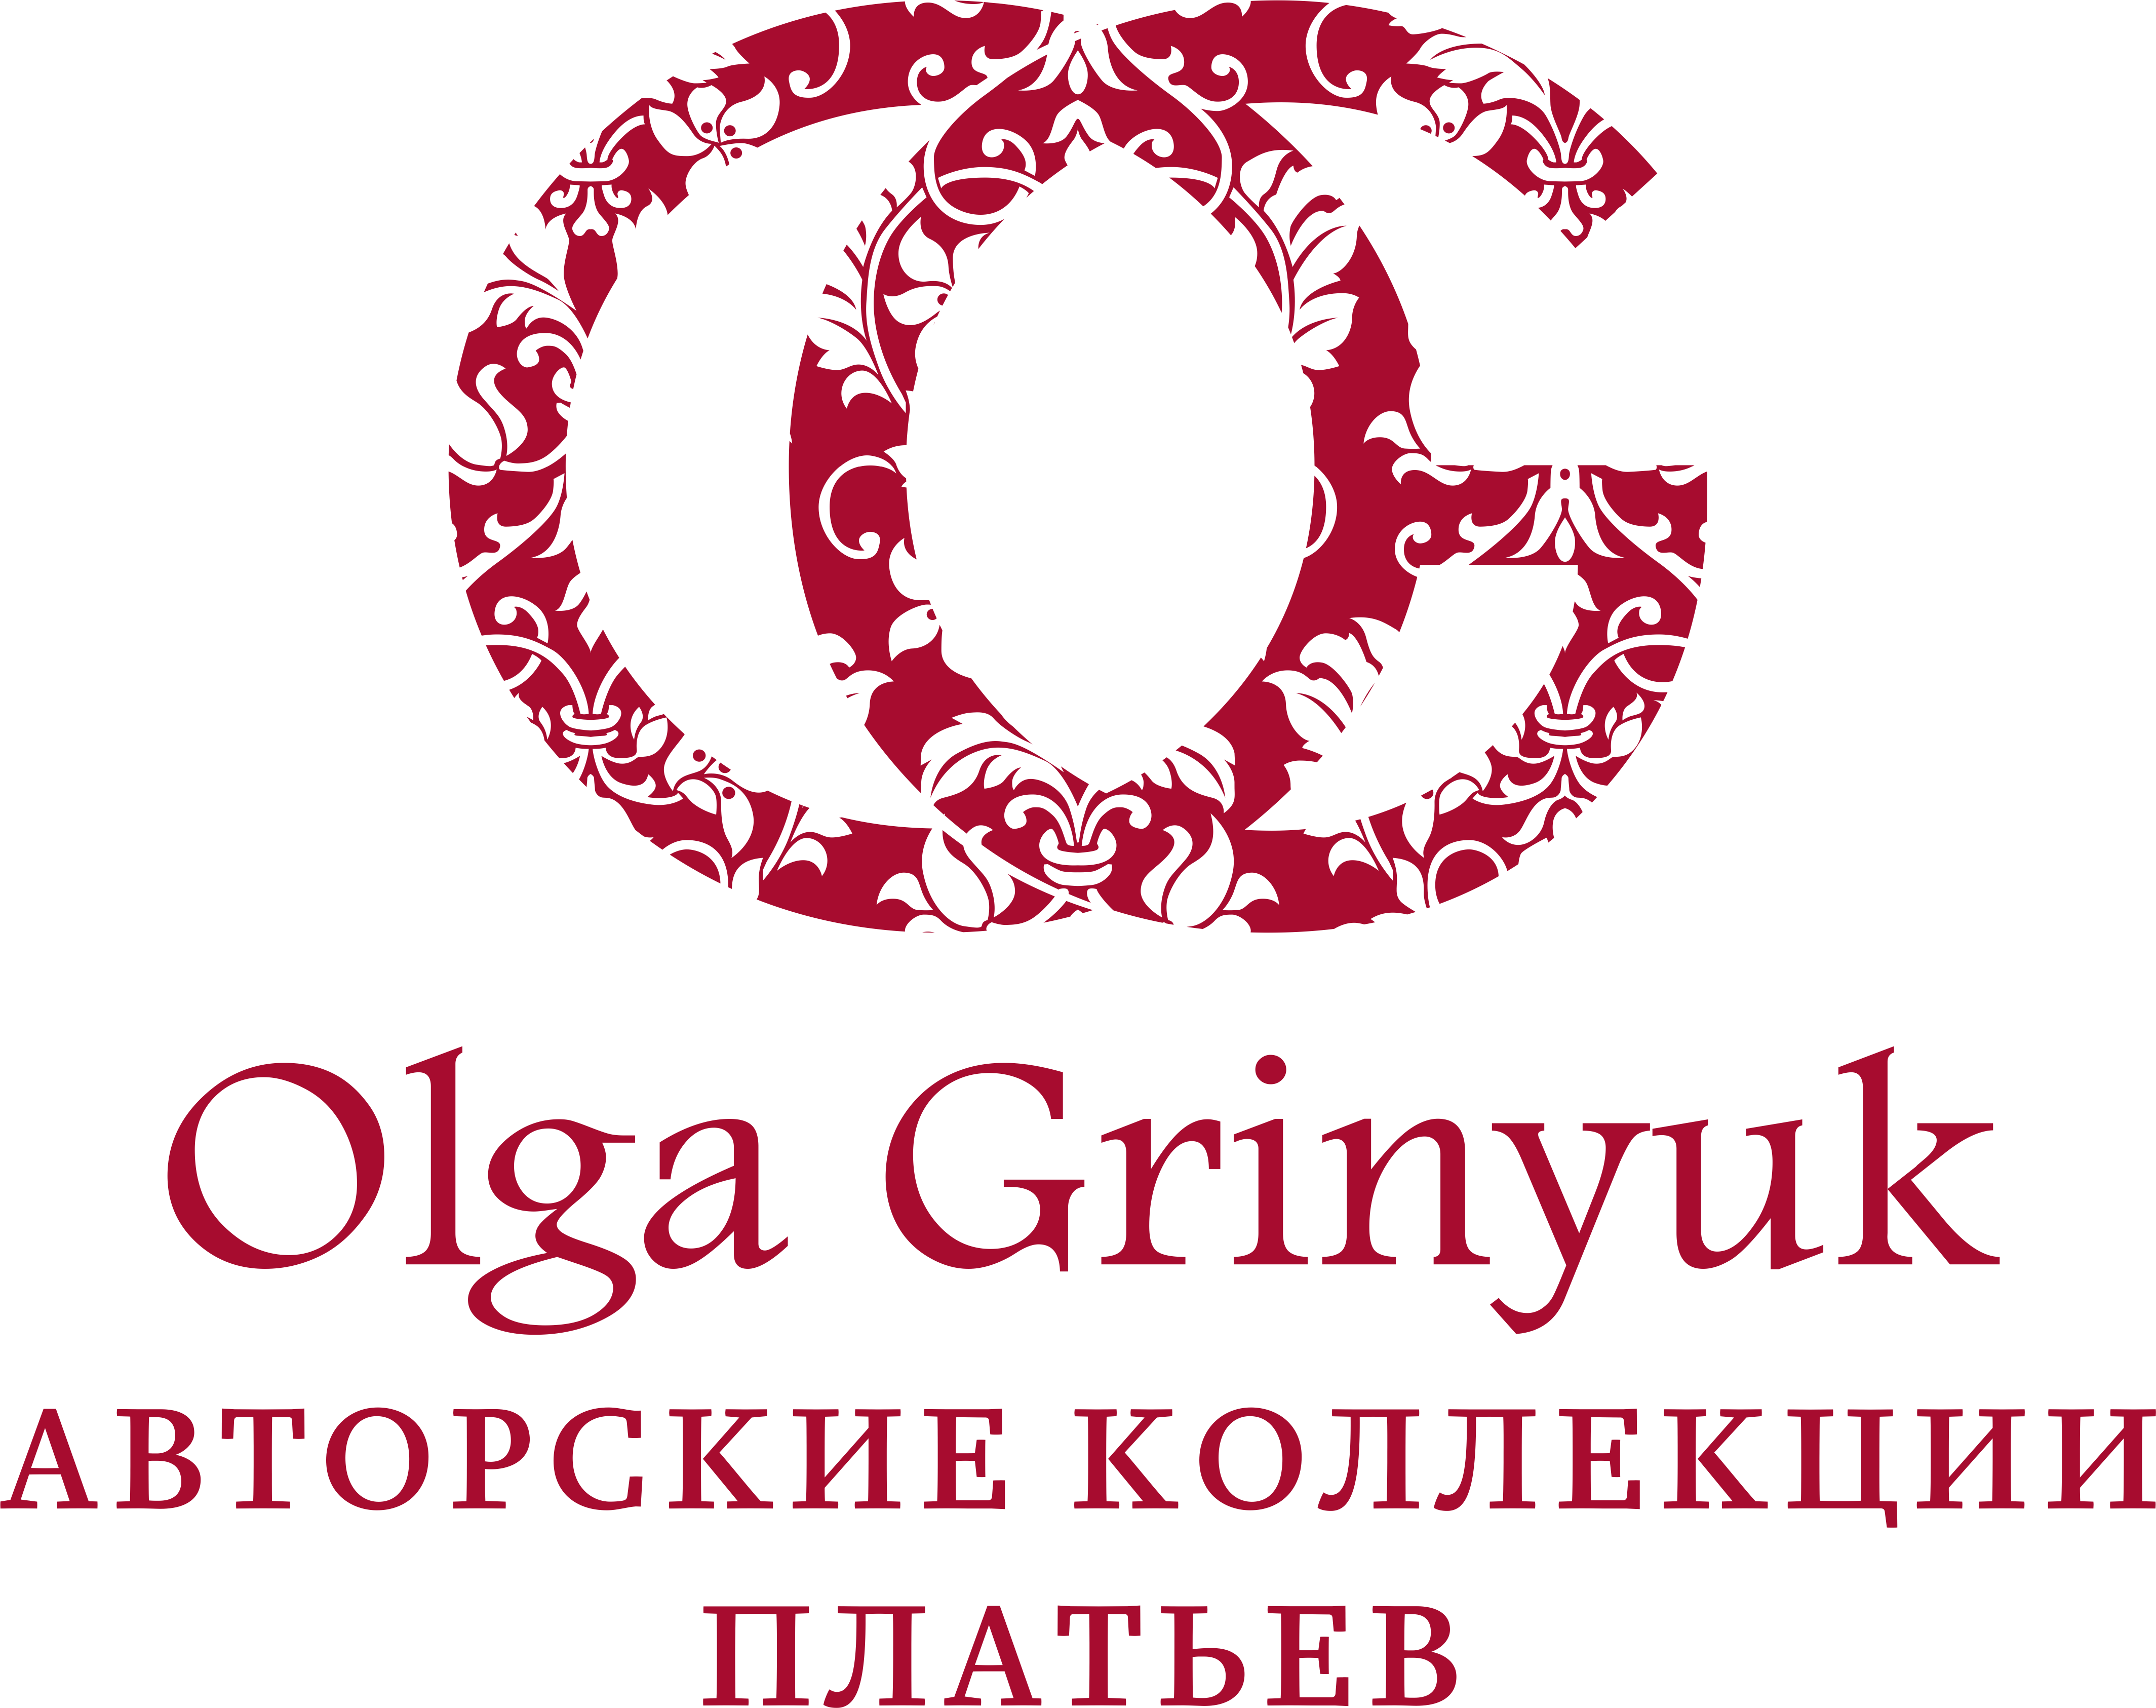 OG-red logo